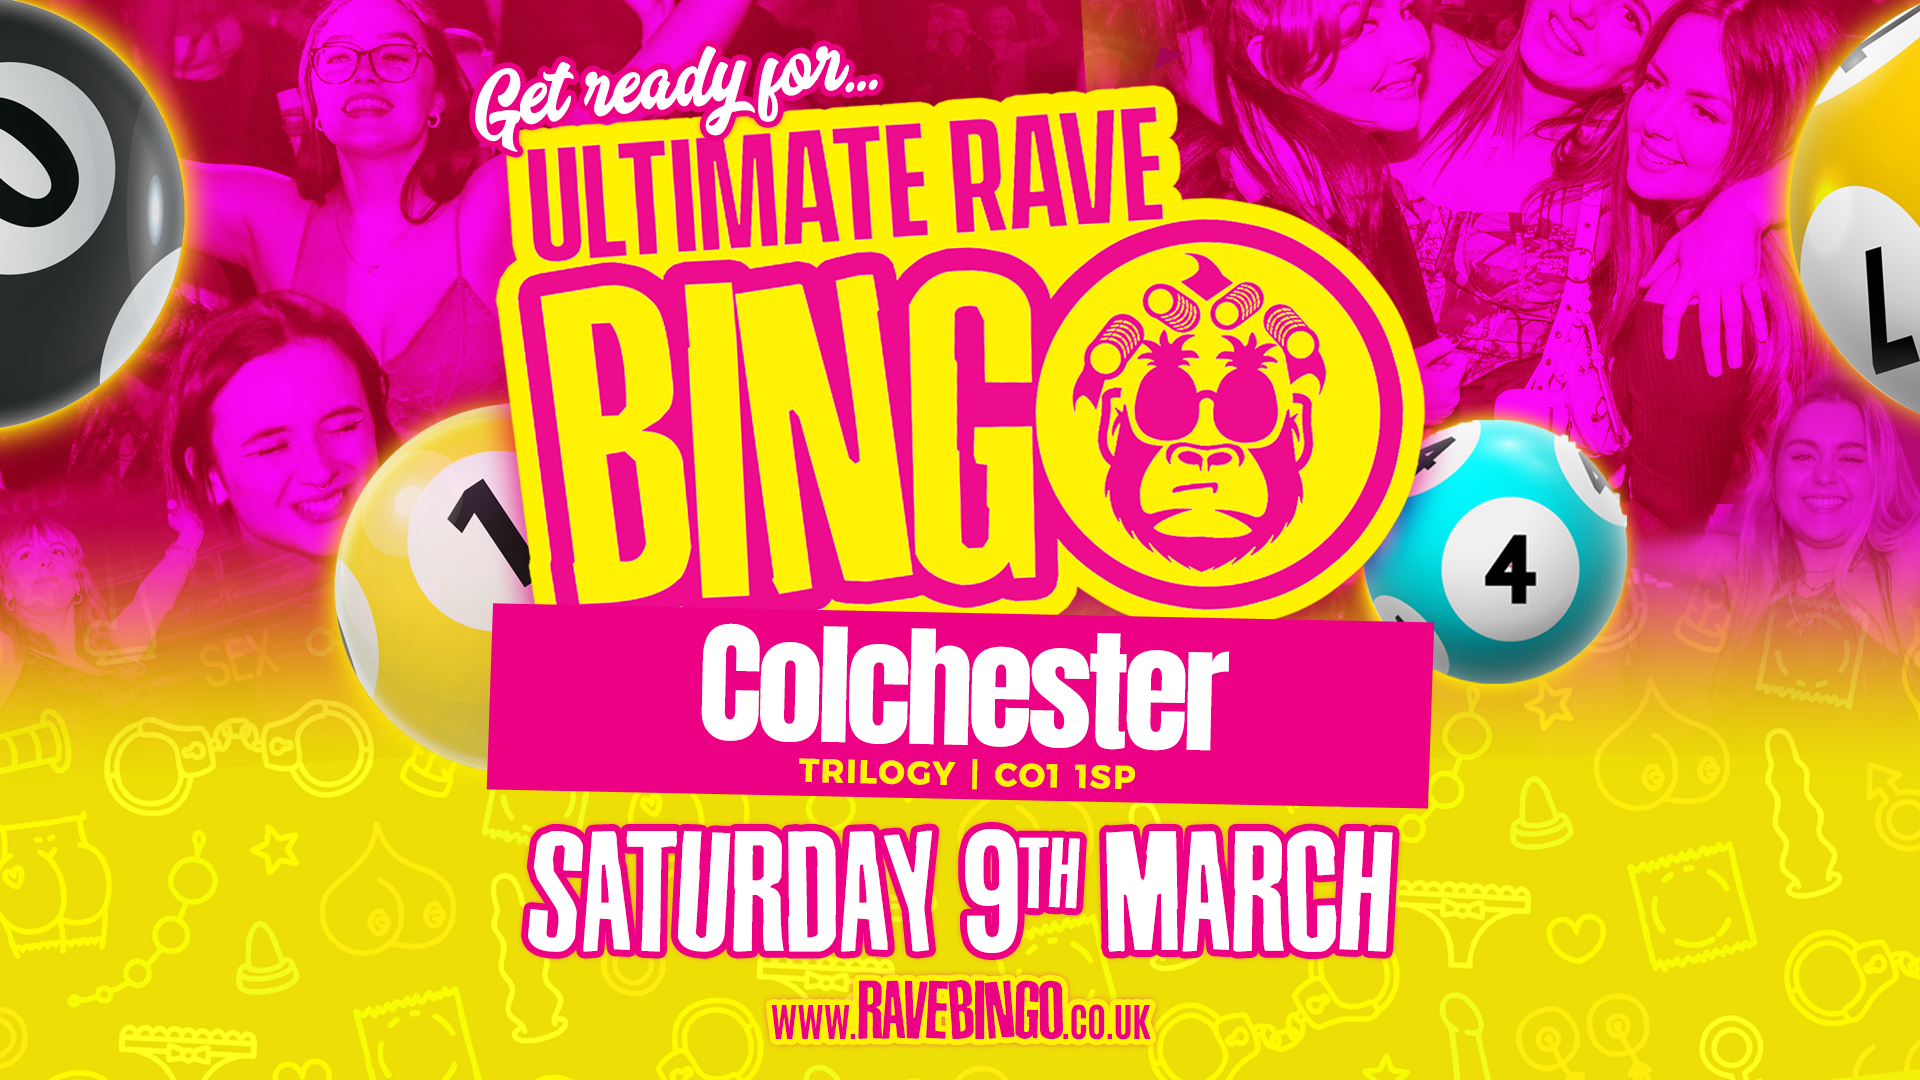 Ultimate Rave Bingo // Colchester // Saturday 9th March